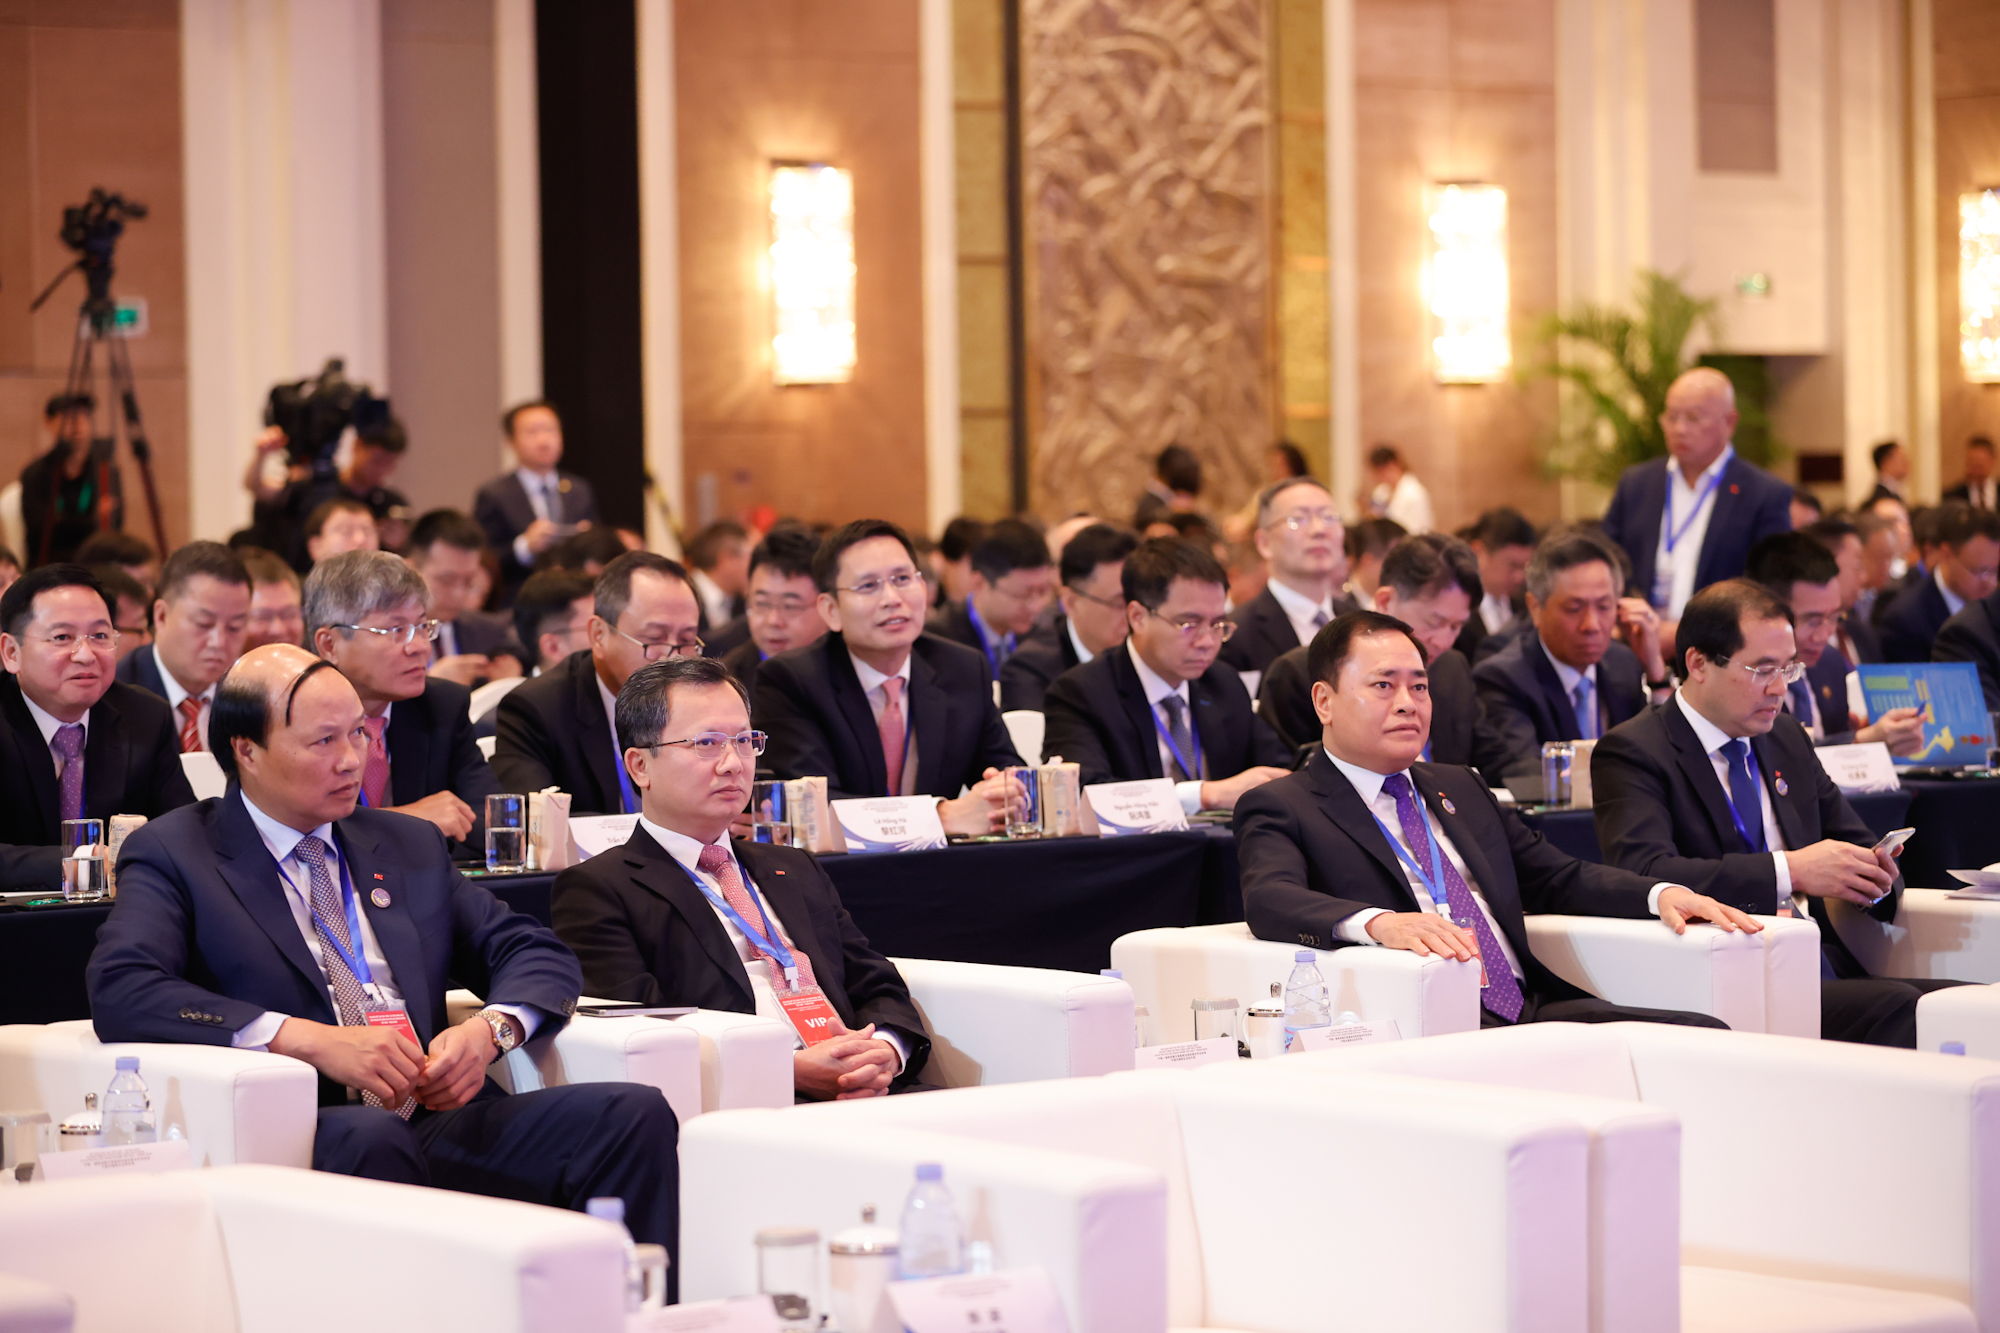 Các đại biểu tham dự Hội nghị trao đổi, chia sẻ những kinh nghiệm quý về phát triển hạ tầng chiến lược giao thông, đề xuất các định hướng, nhiệm vụ, giải pháp, nhất là những bài học về chuyển giao công nghệ và phát triển nguồn nhân lực trong lĩnh vực đường sắt mà Trung Quốc có thế mạnh - Ảnh: VGP/Nhật Bắc